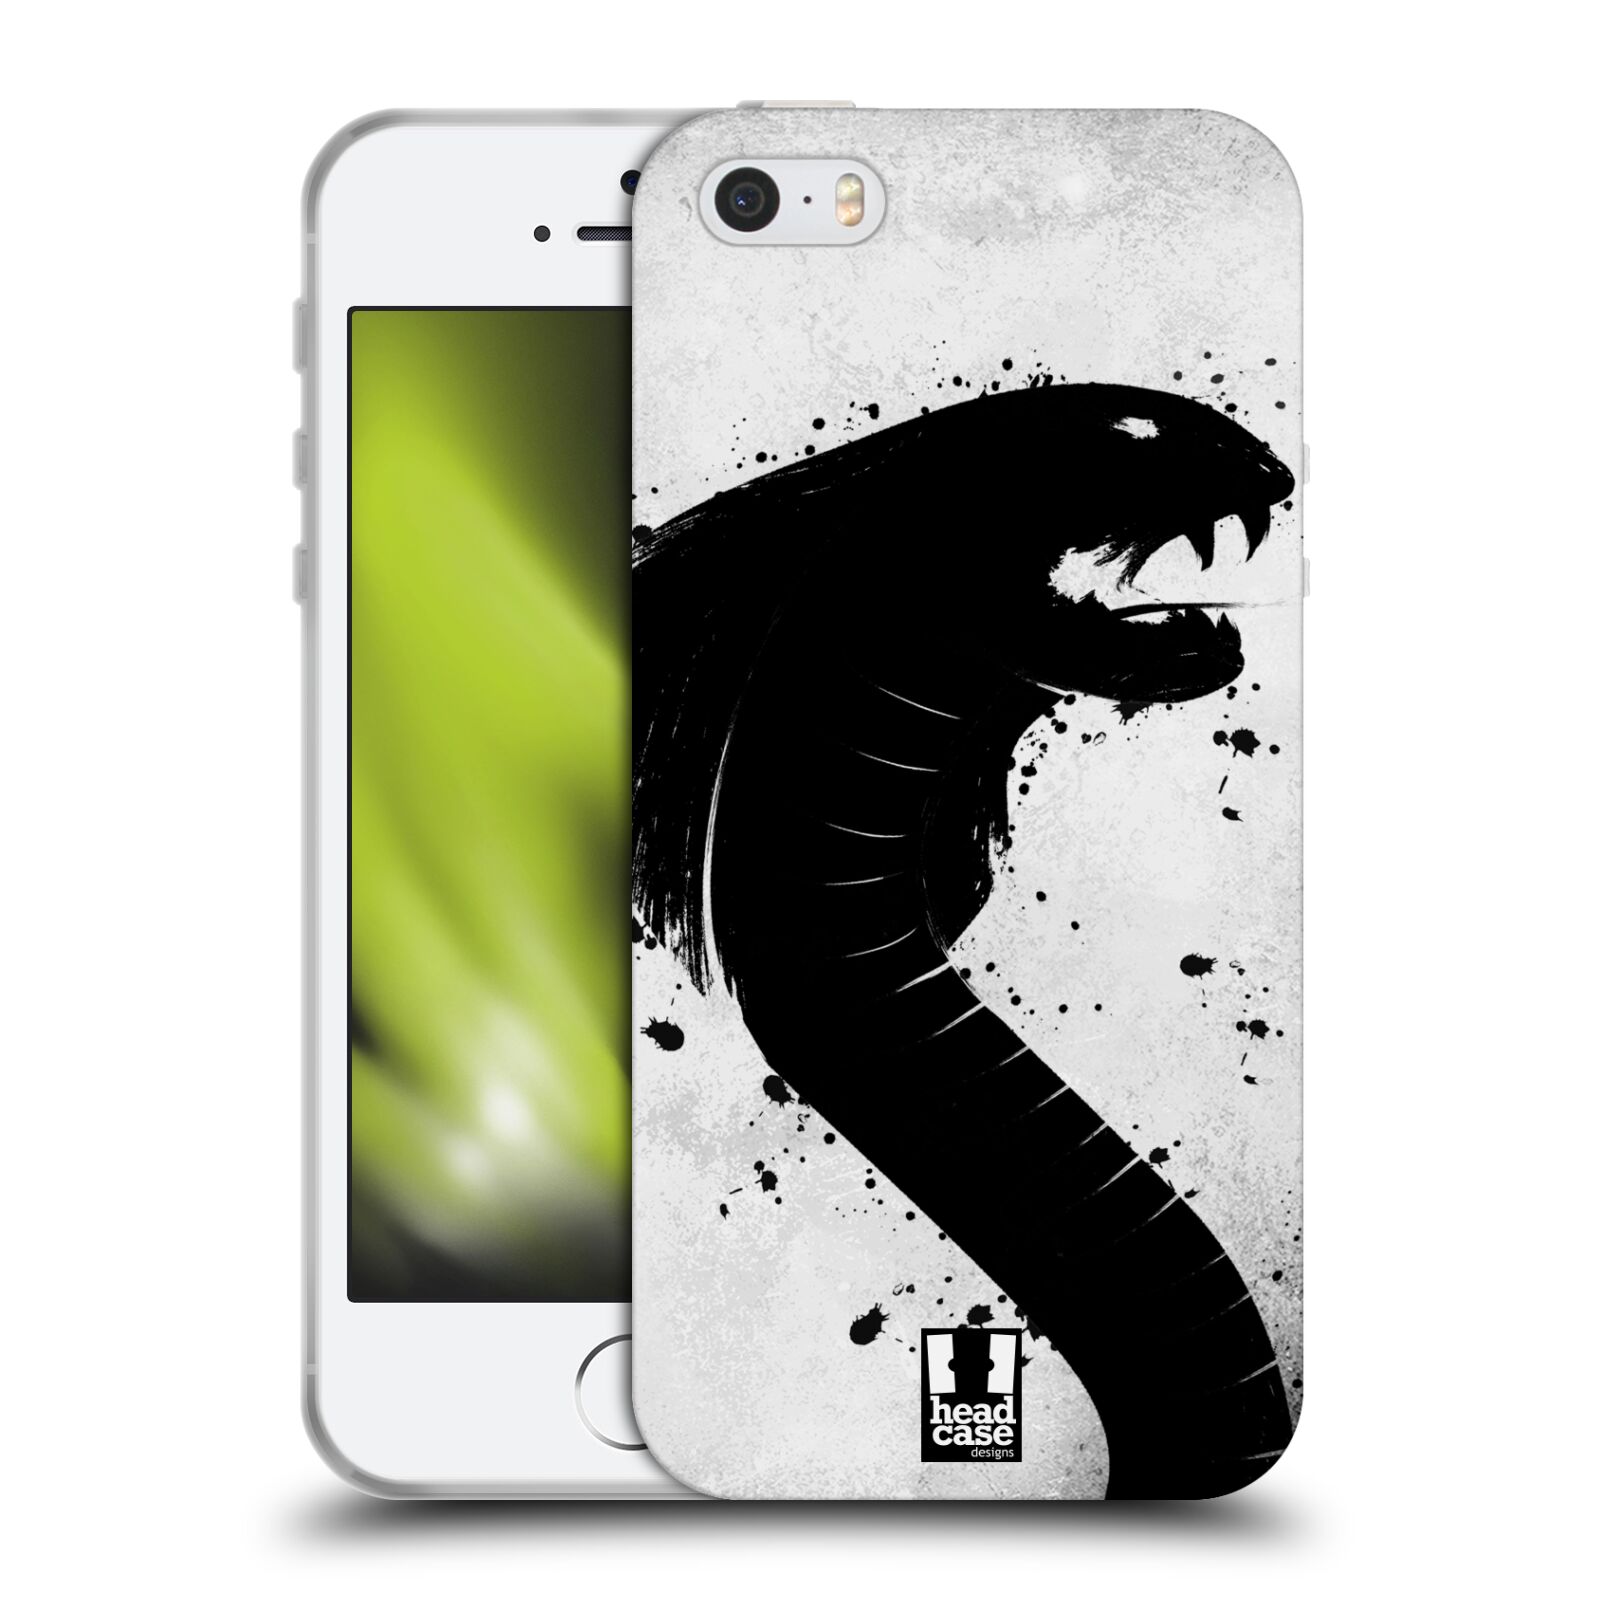 HEAD CASE silikonový obal na mobil Apple Iphone 5/5S vzor Kresba tuš zvíře had kobra